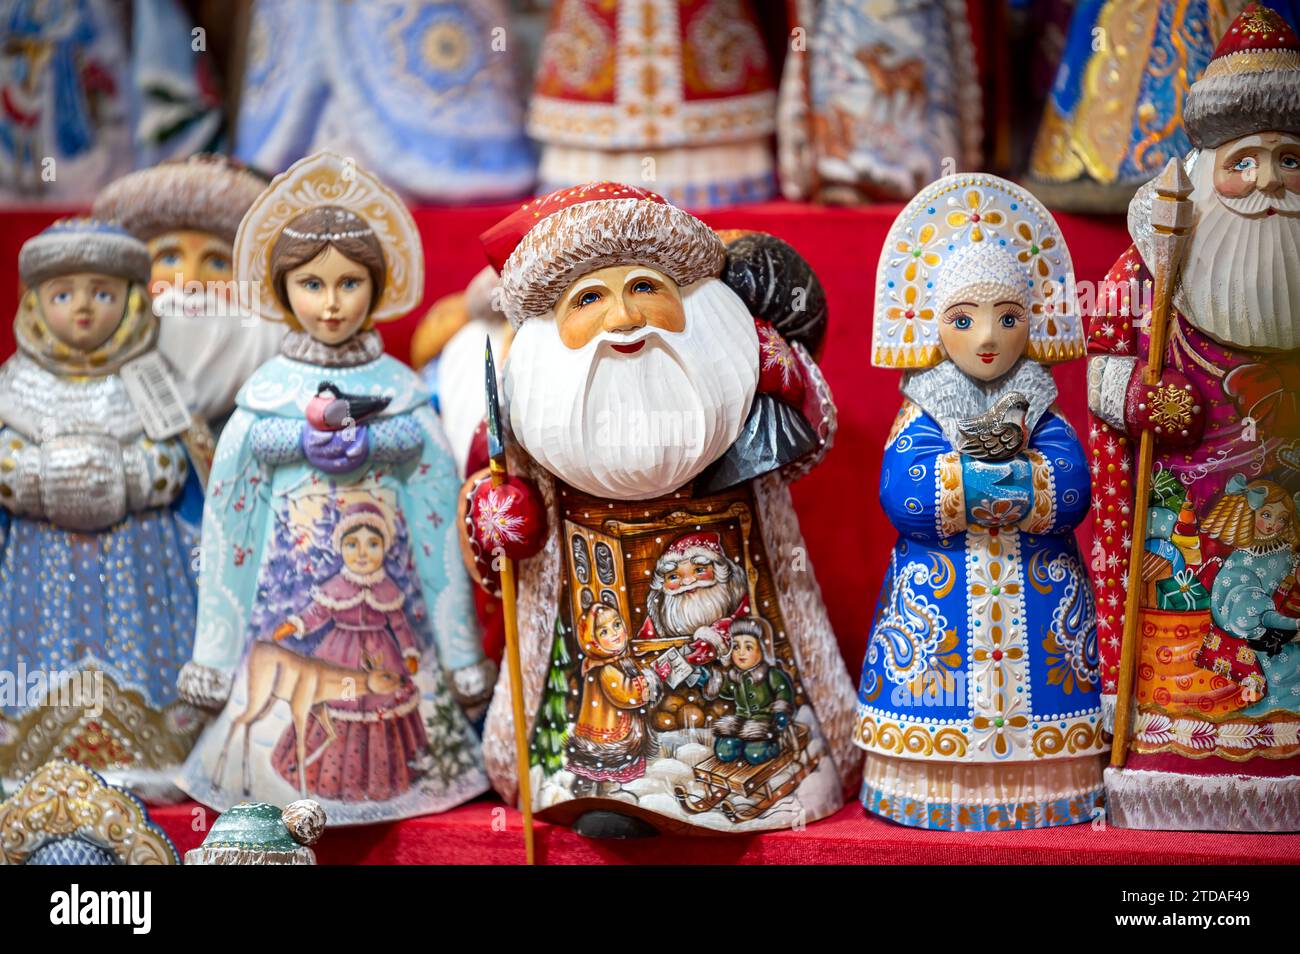 Die Figuren von Vater Frost (russisch Ded Moroz) und Segurochka werden vor weihnachten im Schaufenster ausgestellt. Winter, Dezember. Russisches Weihnachtsmerkmal Stockfoto